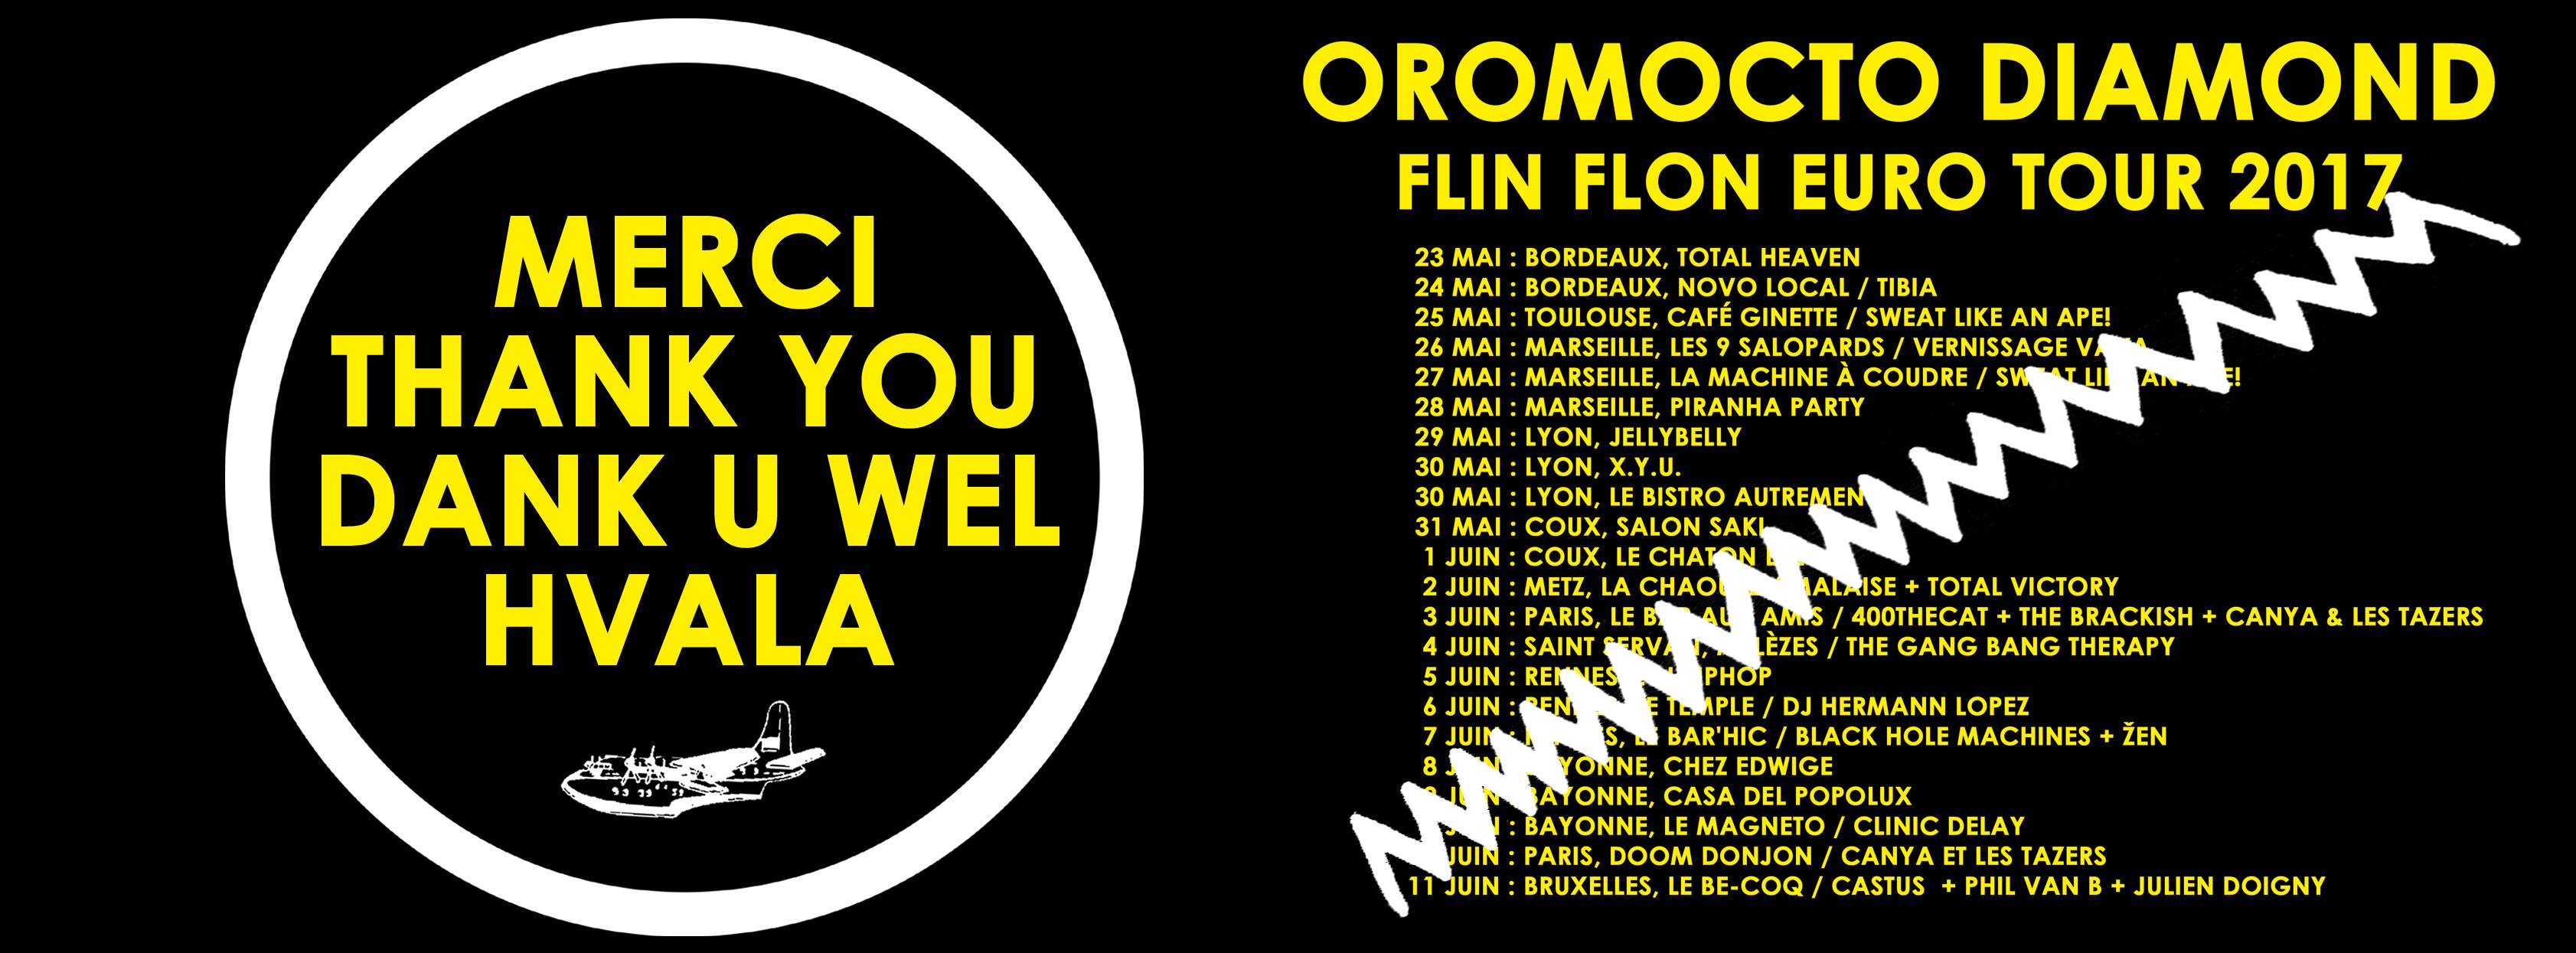 Oromocto Diamond - Flin Flon Euro Tour 2017